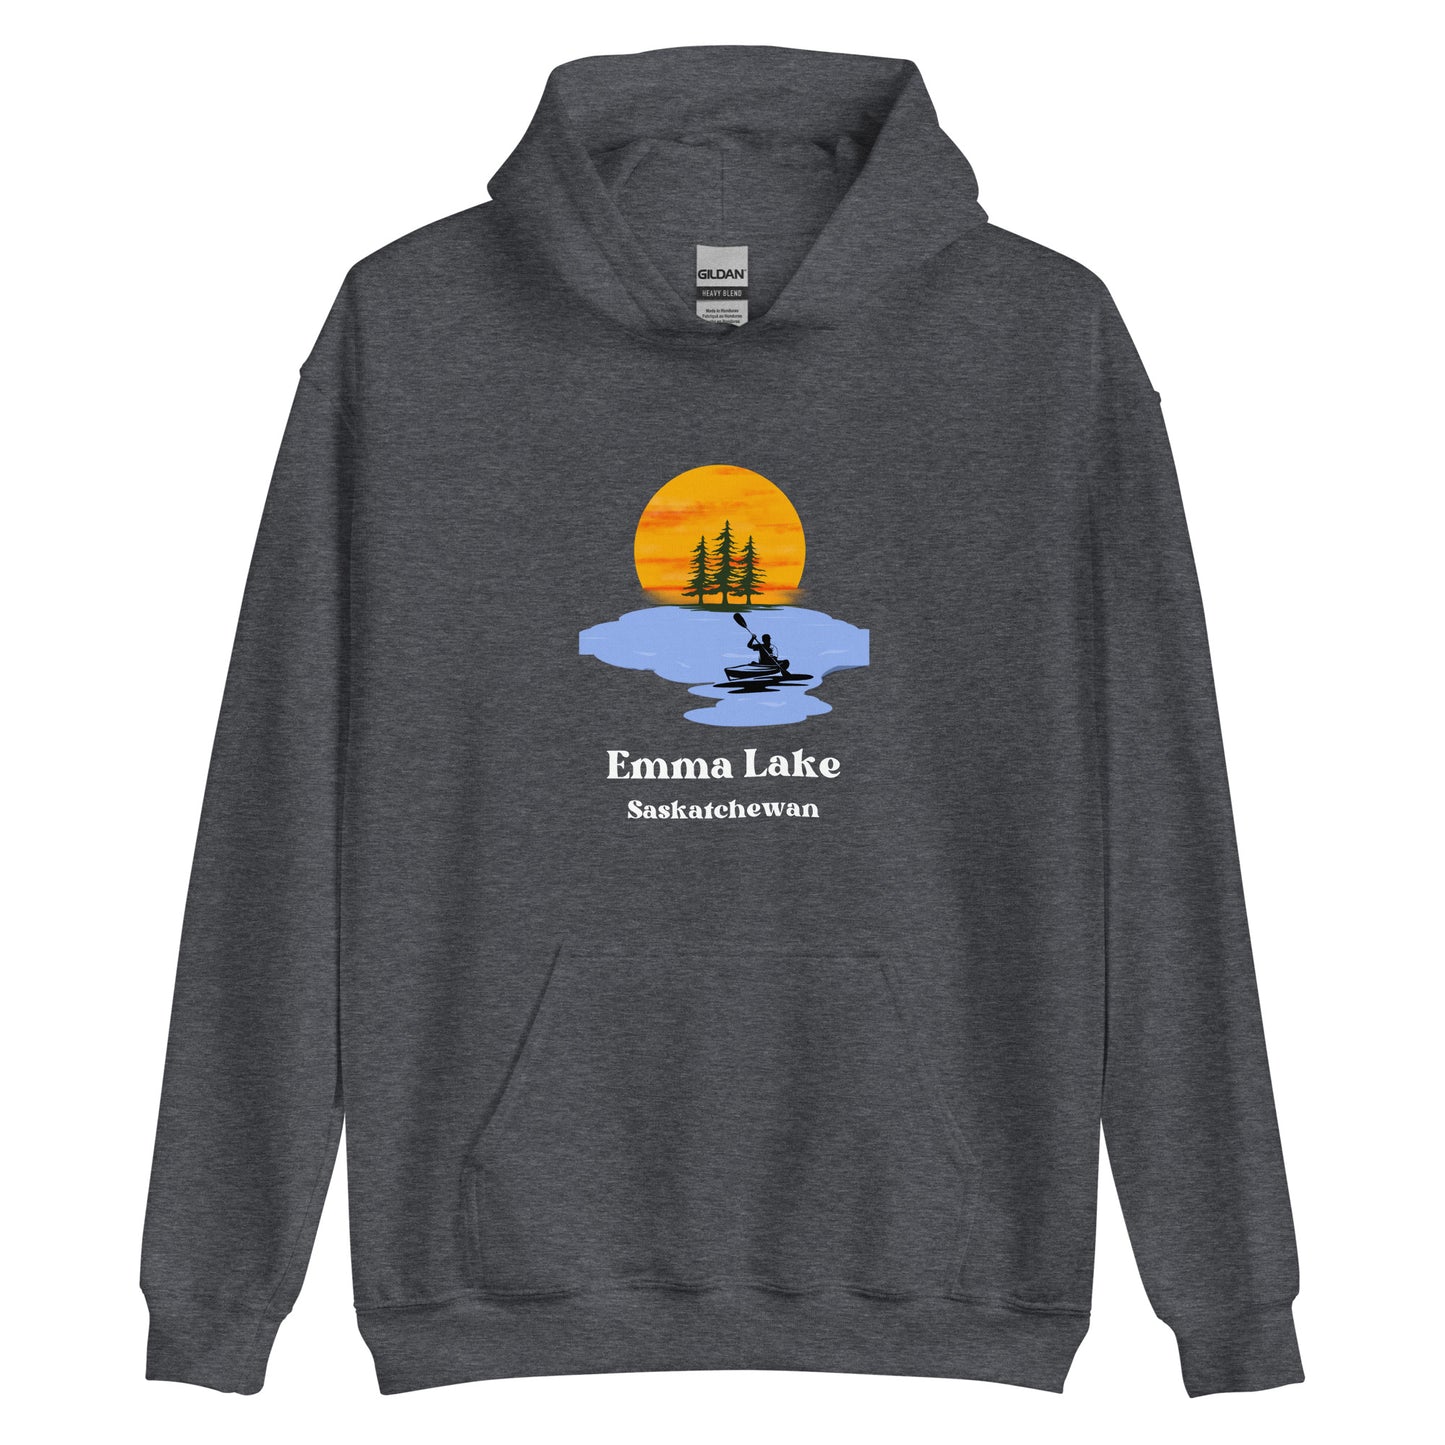 Emma Lake, SK - Unisex Hoodie - Kayak